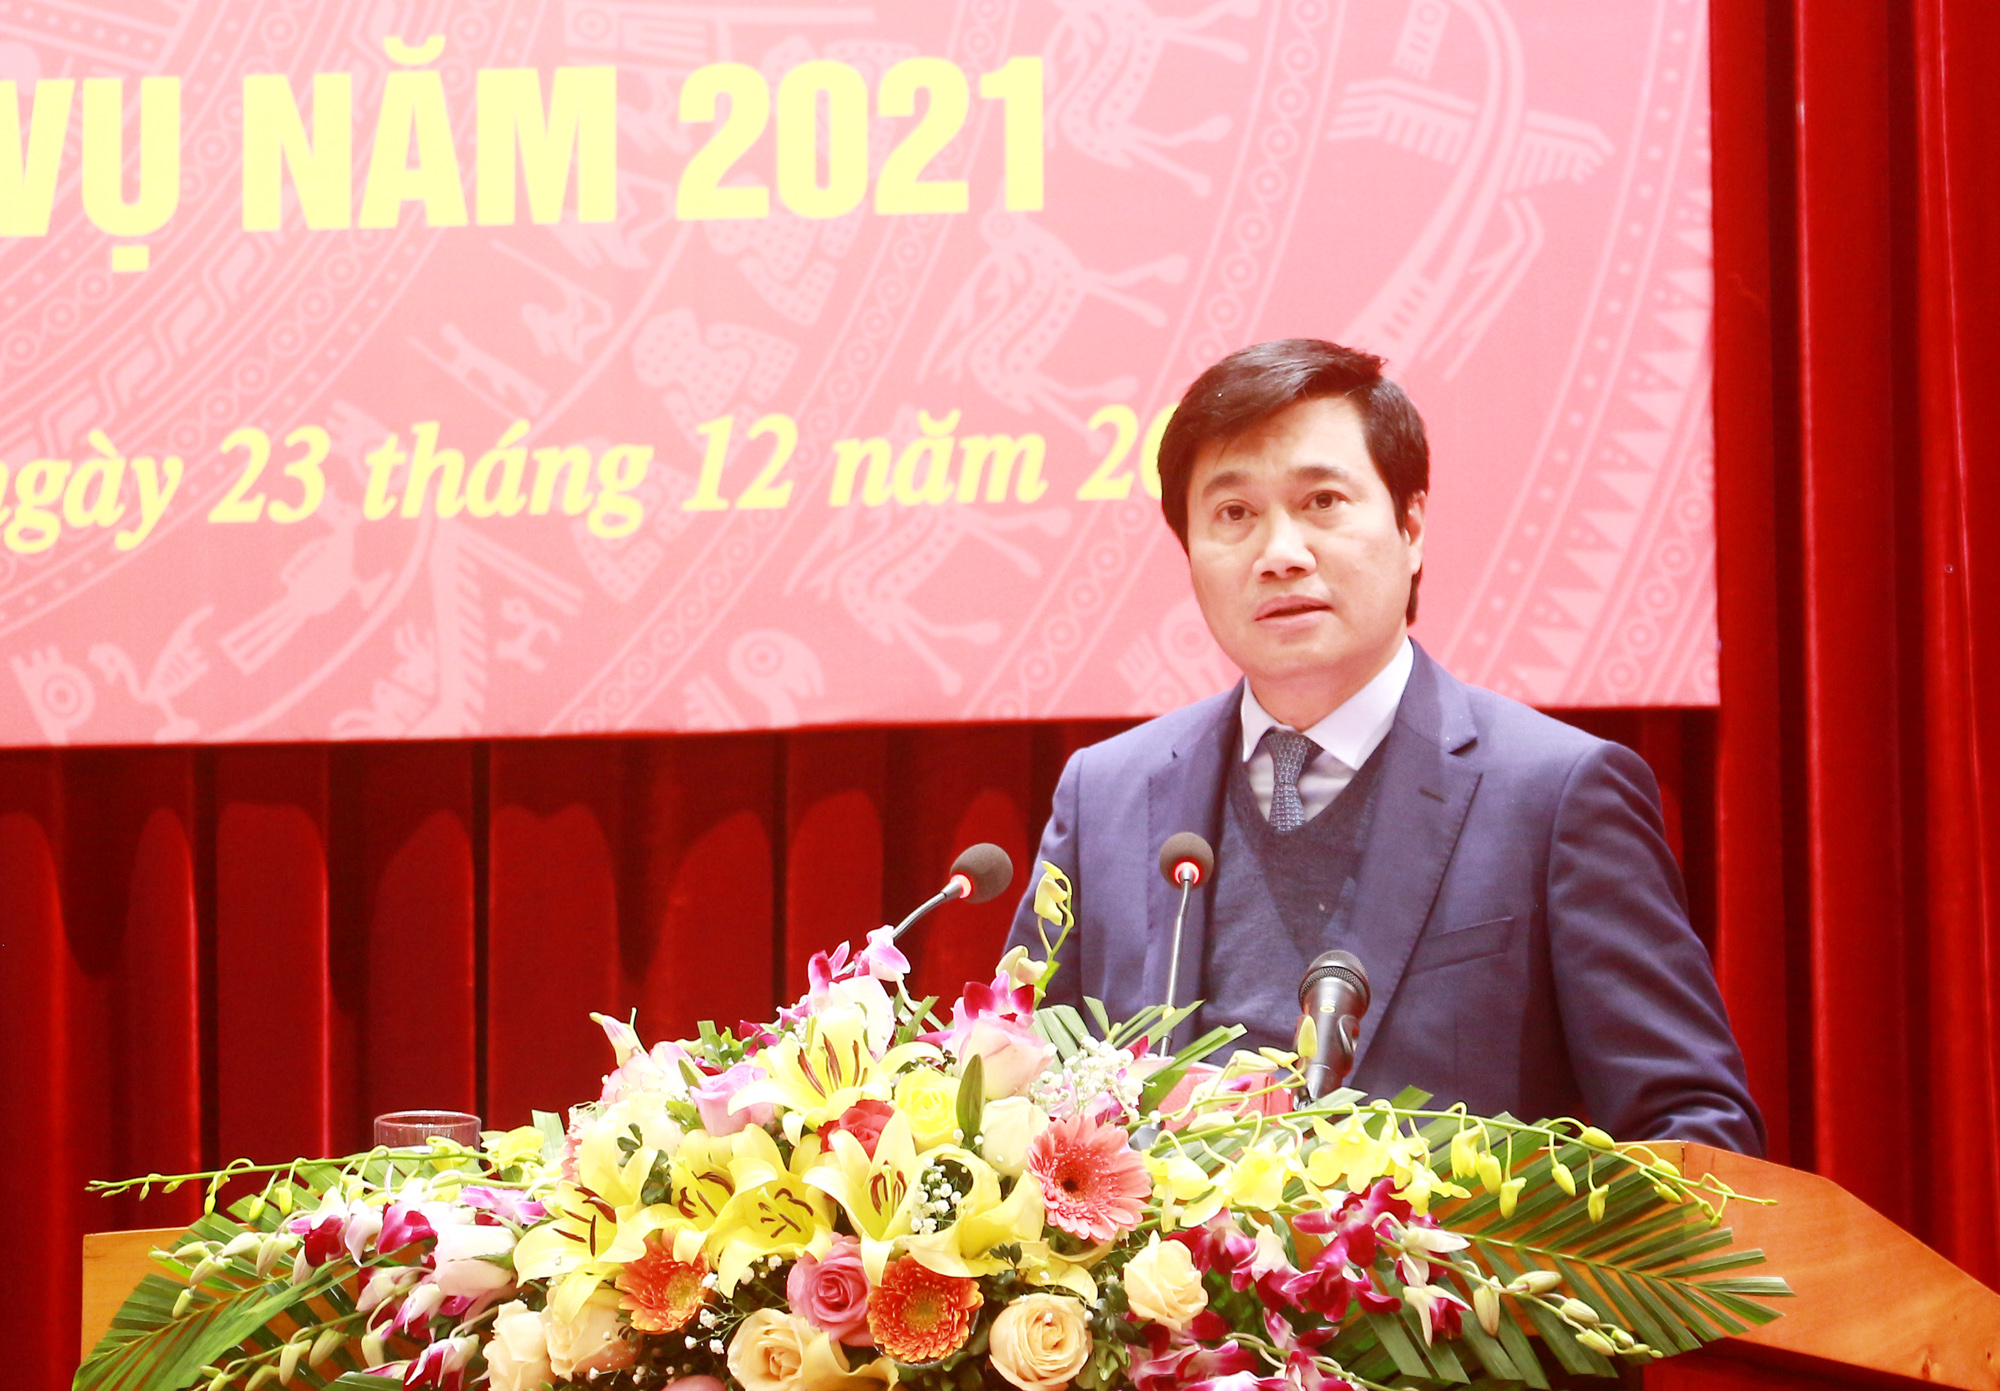 Đồng chí Nguyễn Tường Văn, Chủ tịch UBND tỉnh, phát biểu tại hội nghị.